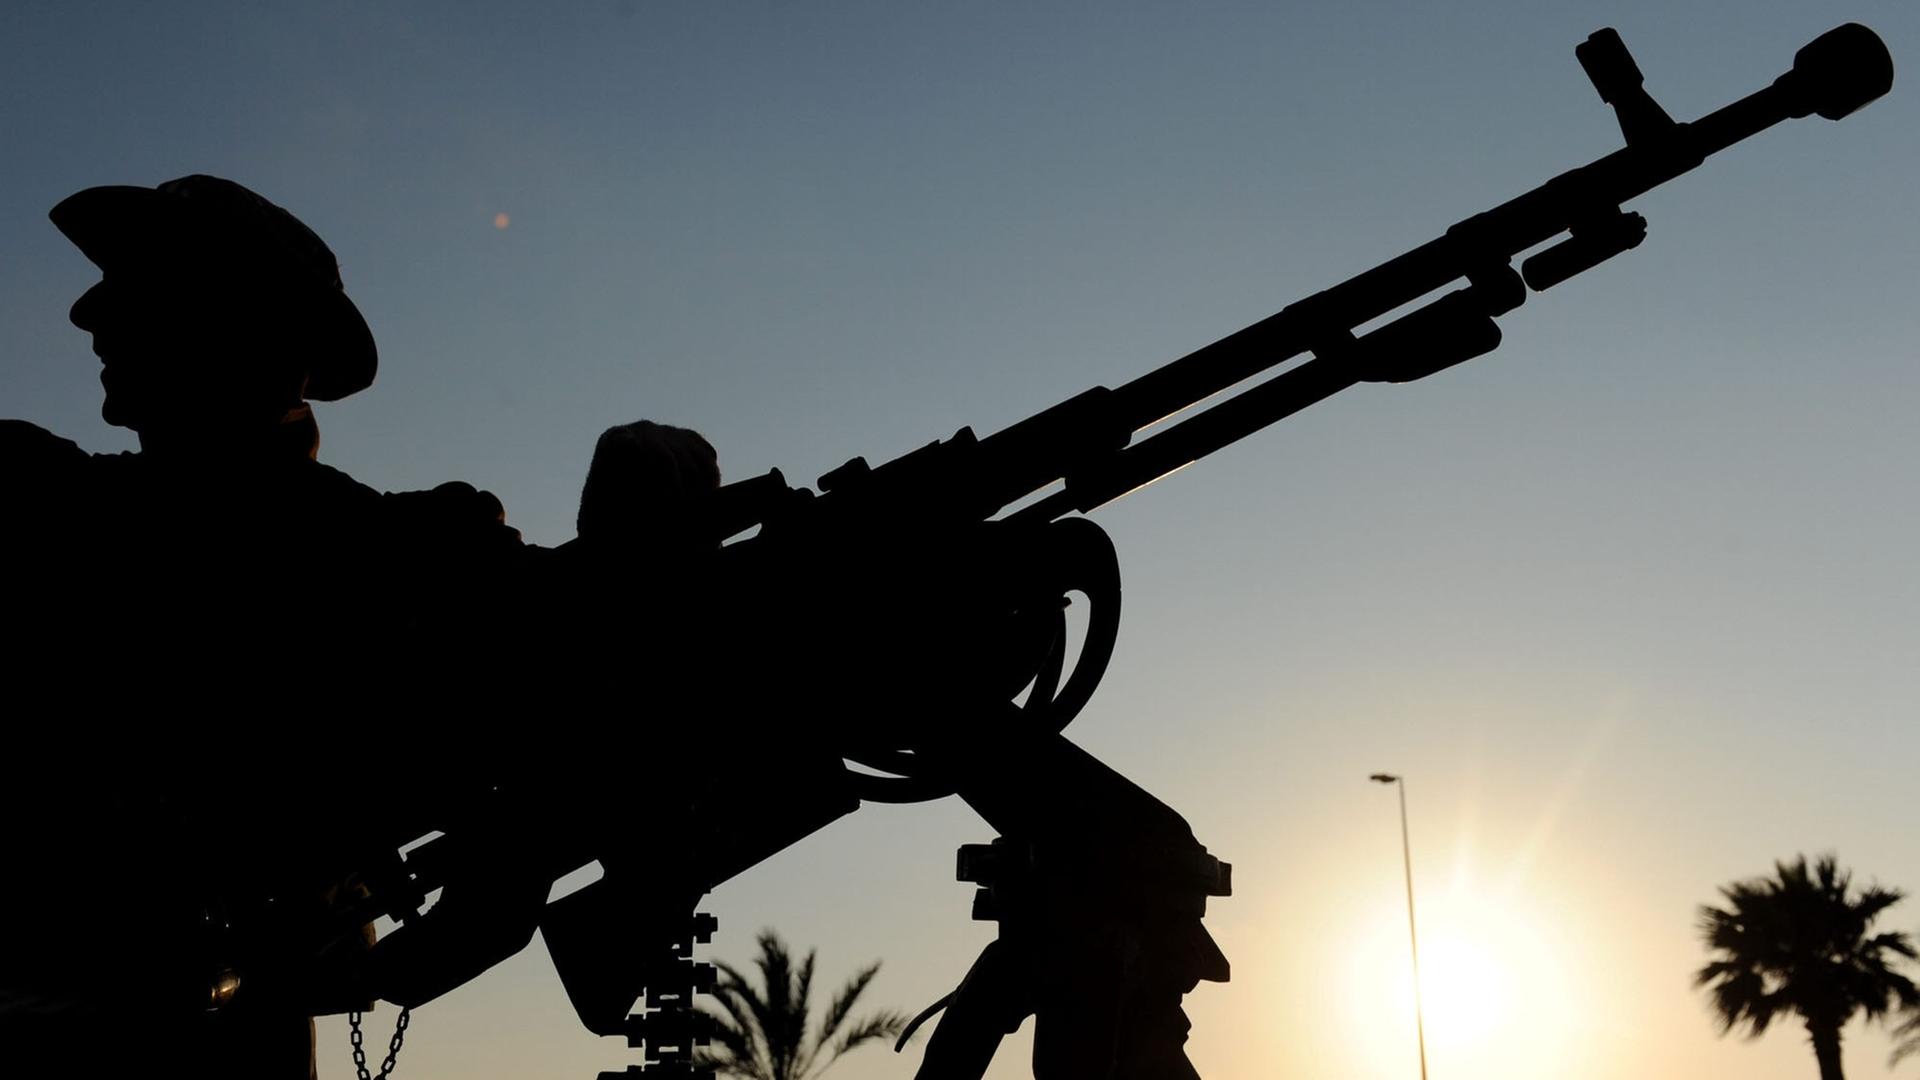 Ein libyscher Rebell steht am Samstag (02.04.2011) in Bengasi hinter seinem schweren Maschinengewehr. 02.04.2011